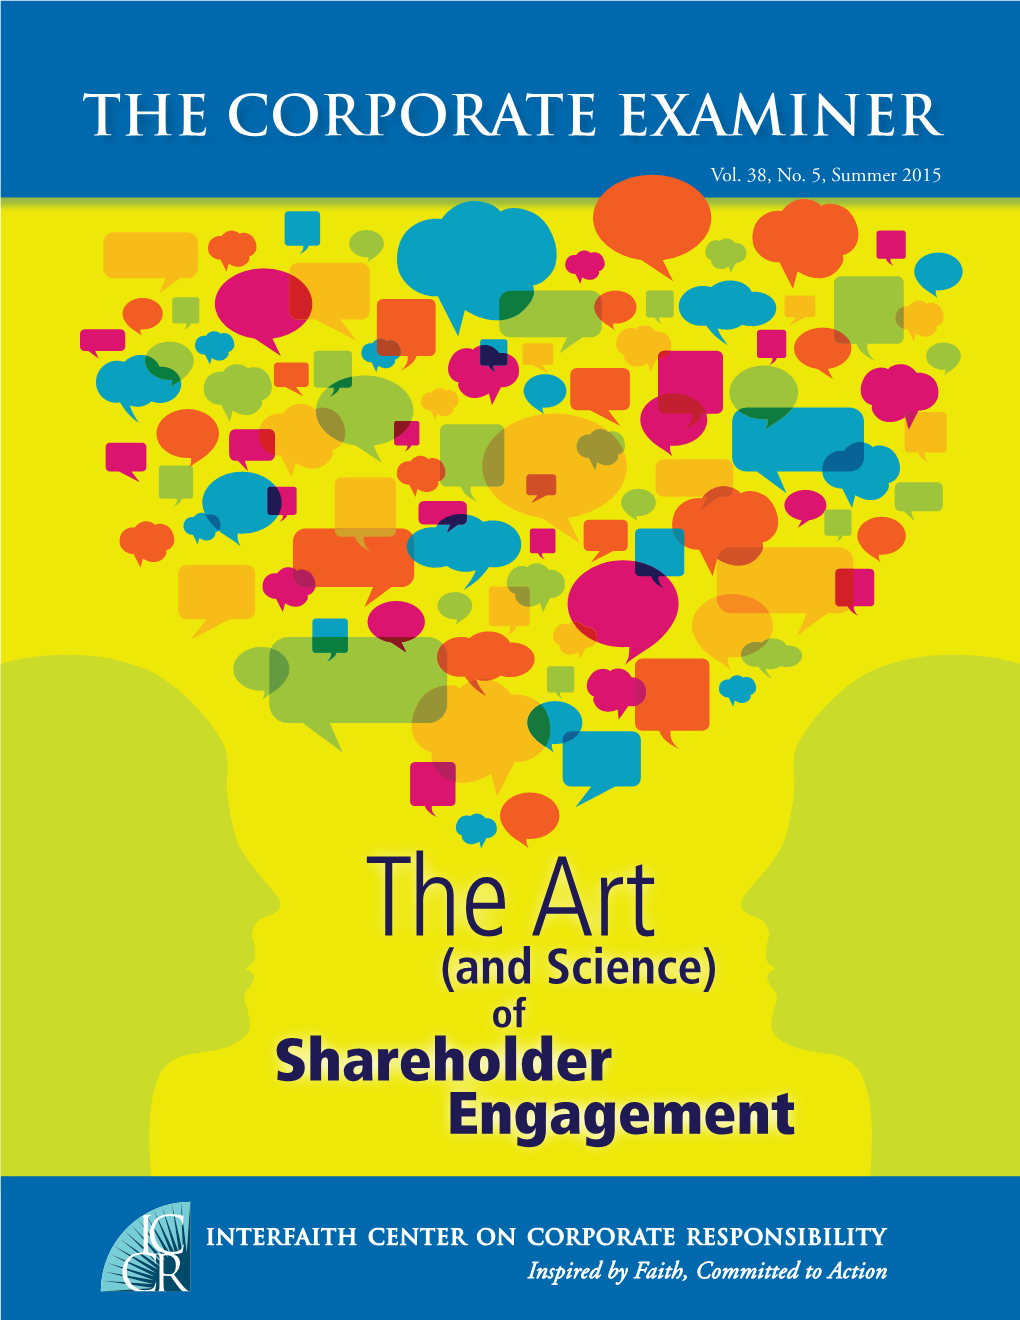 Shareholder Engagement